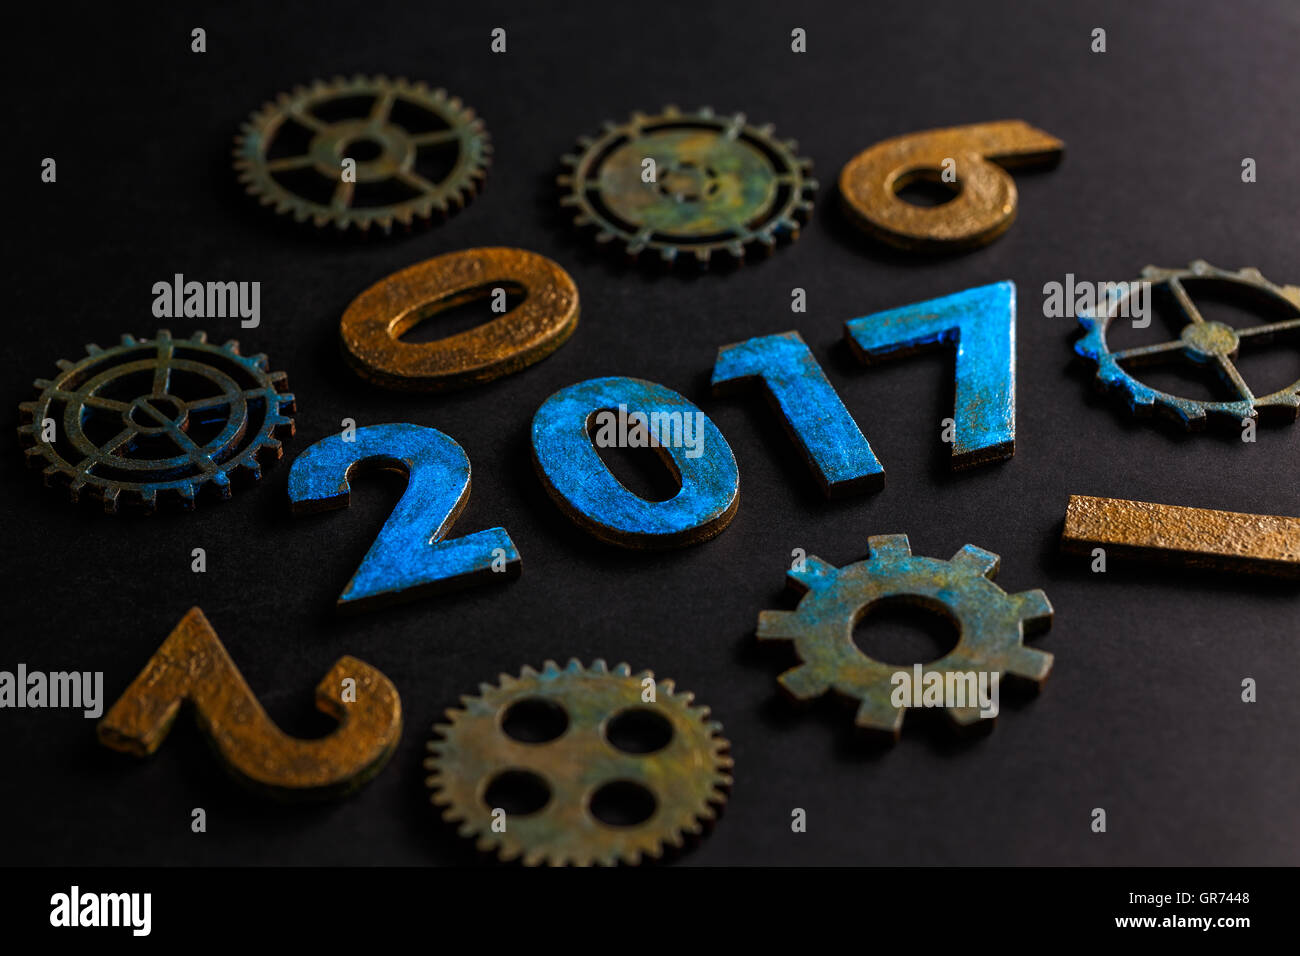 2016-2017 changement représente la nouvelle année 2017 Banque D'Images